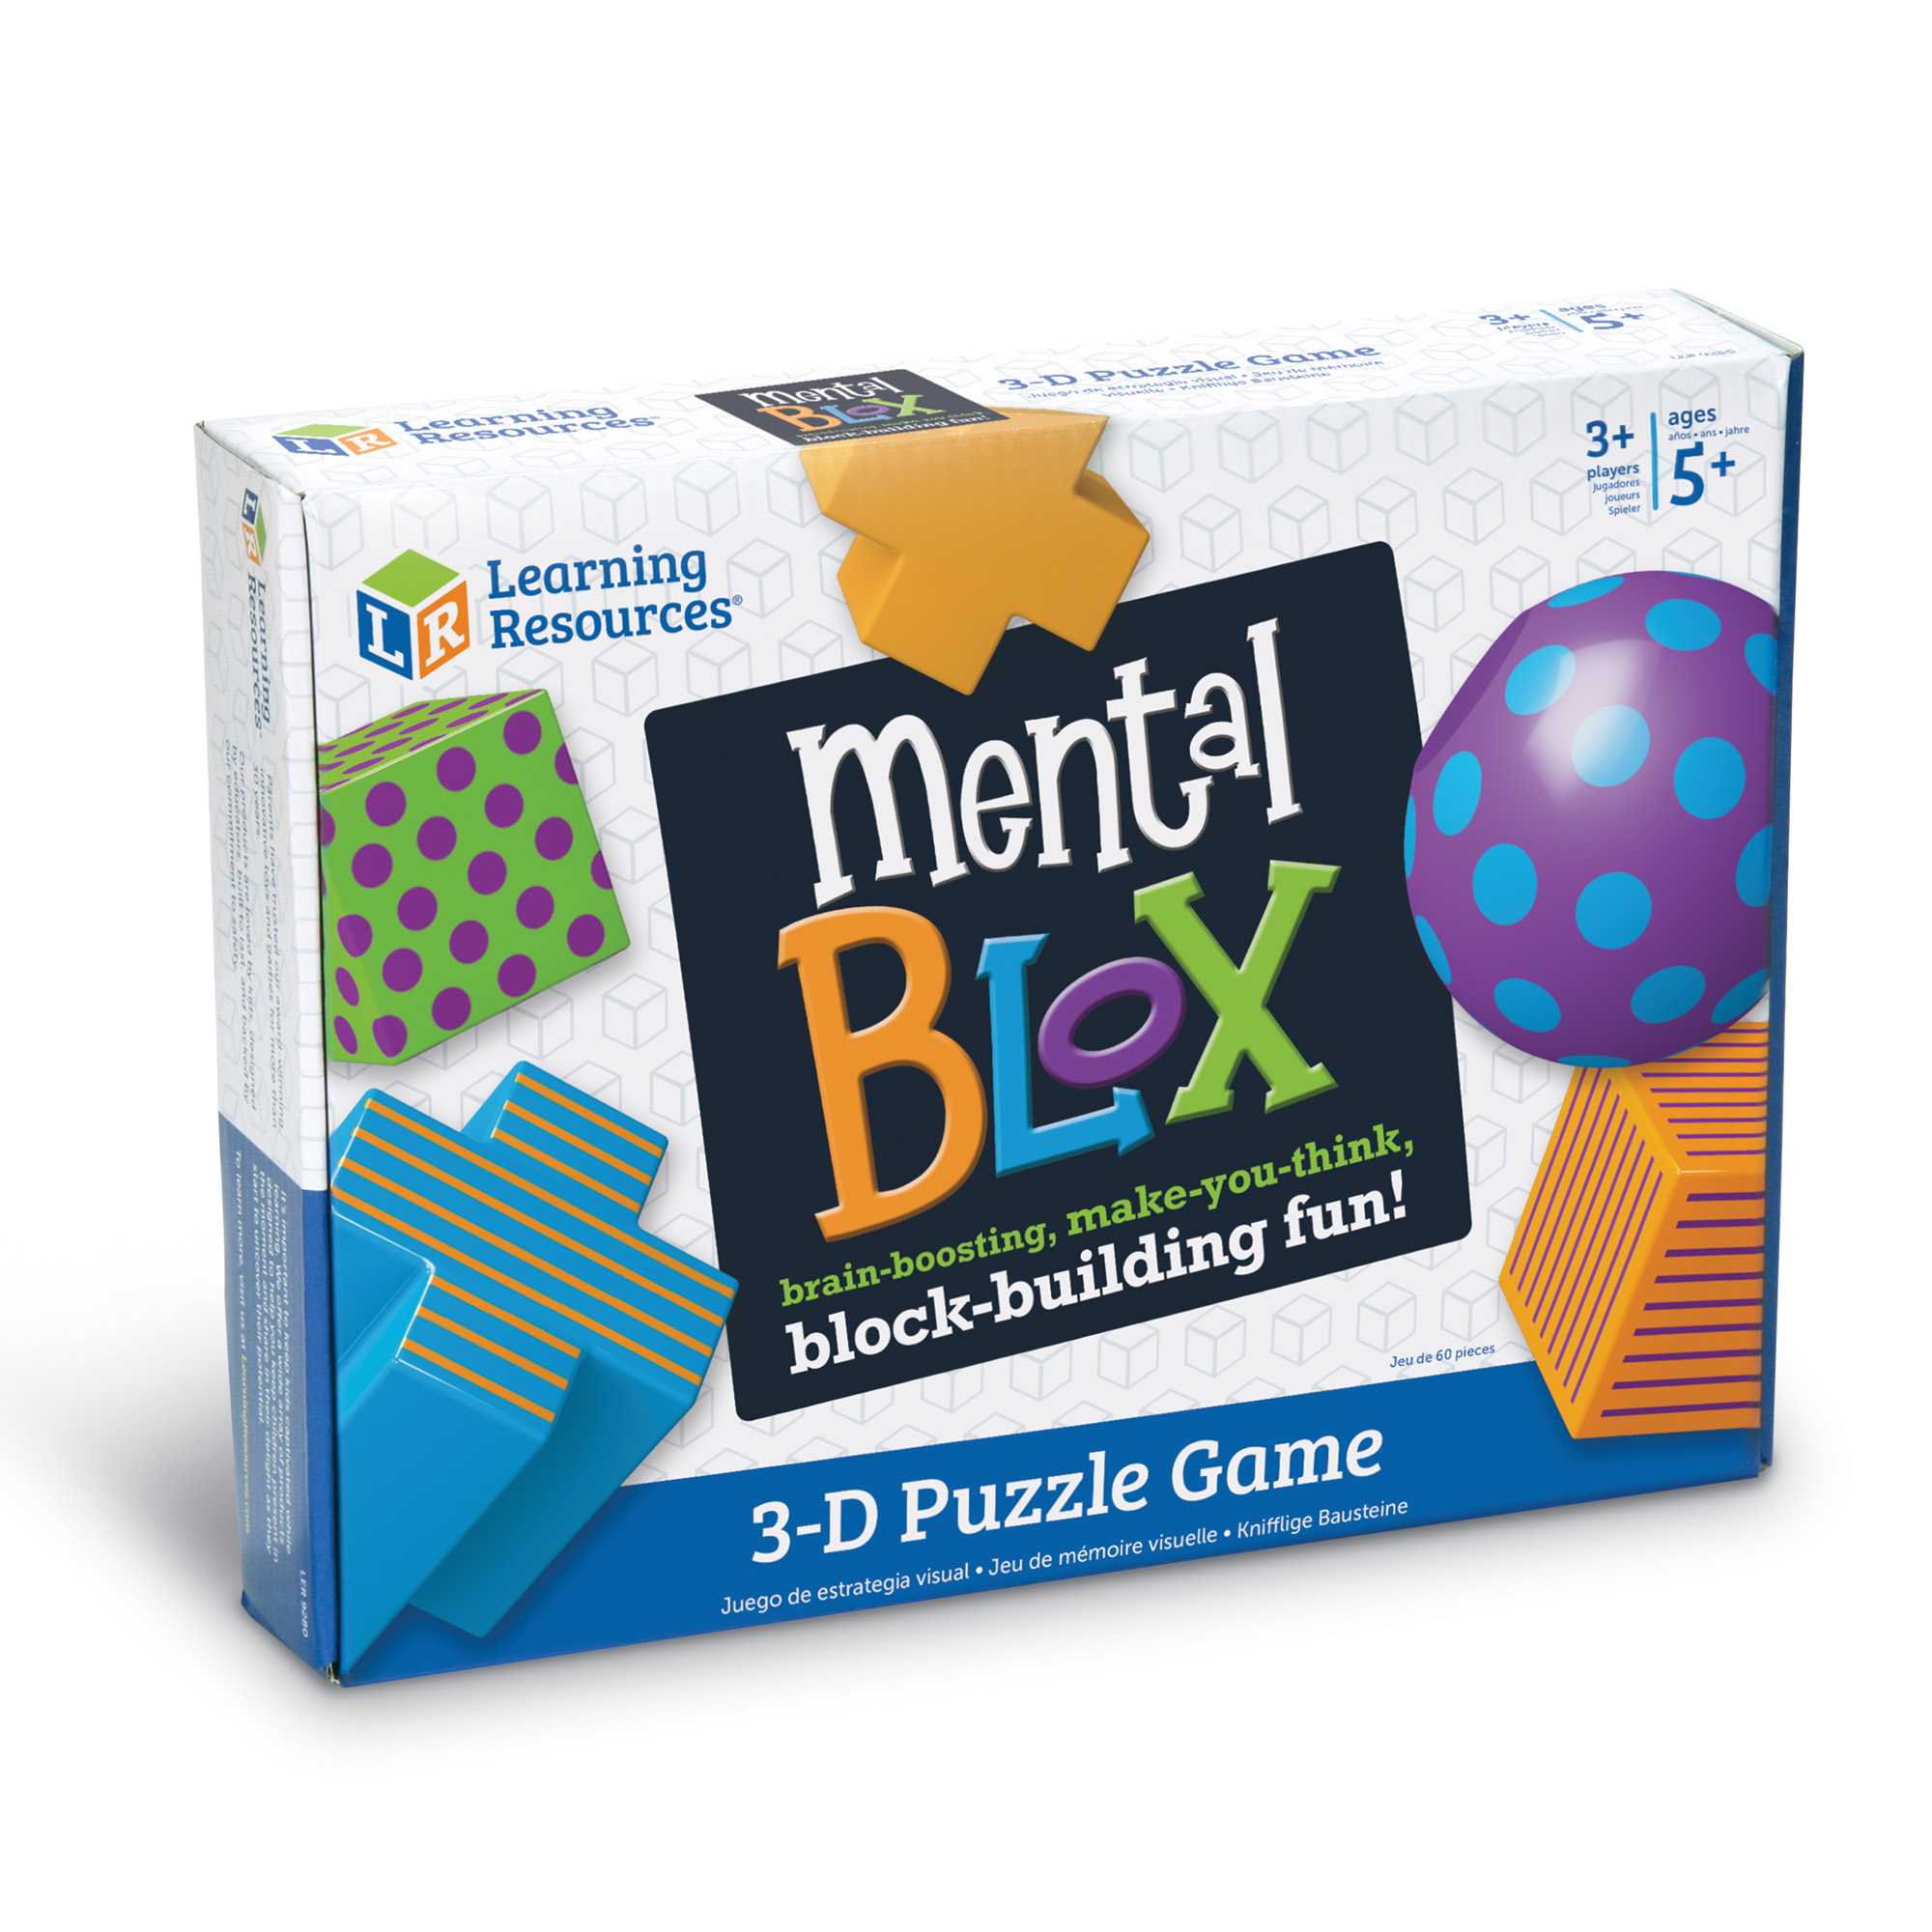 [5 ขวบ +] Mental Blox Critical Thinking Game ของเล่น ชุดเกมคิดวิเคราะห์ ฝึกสมอง [Learning Resources]